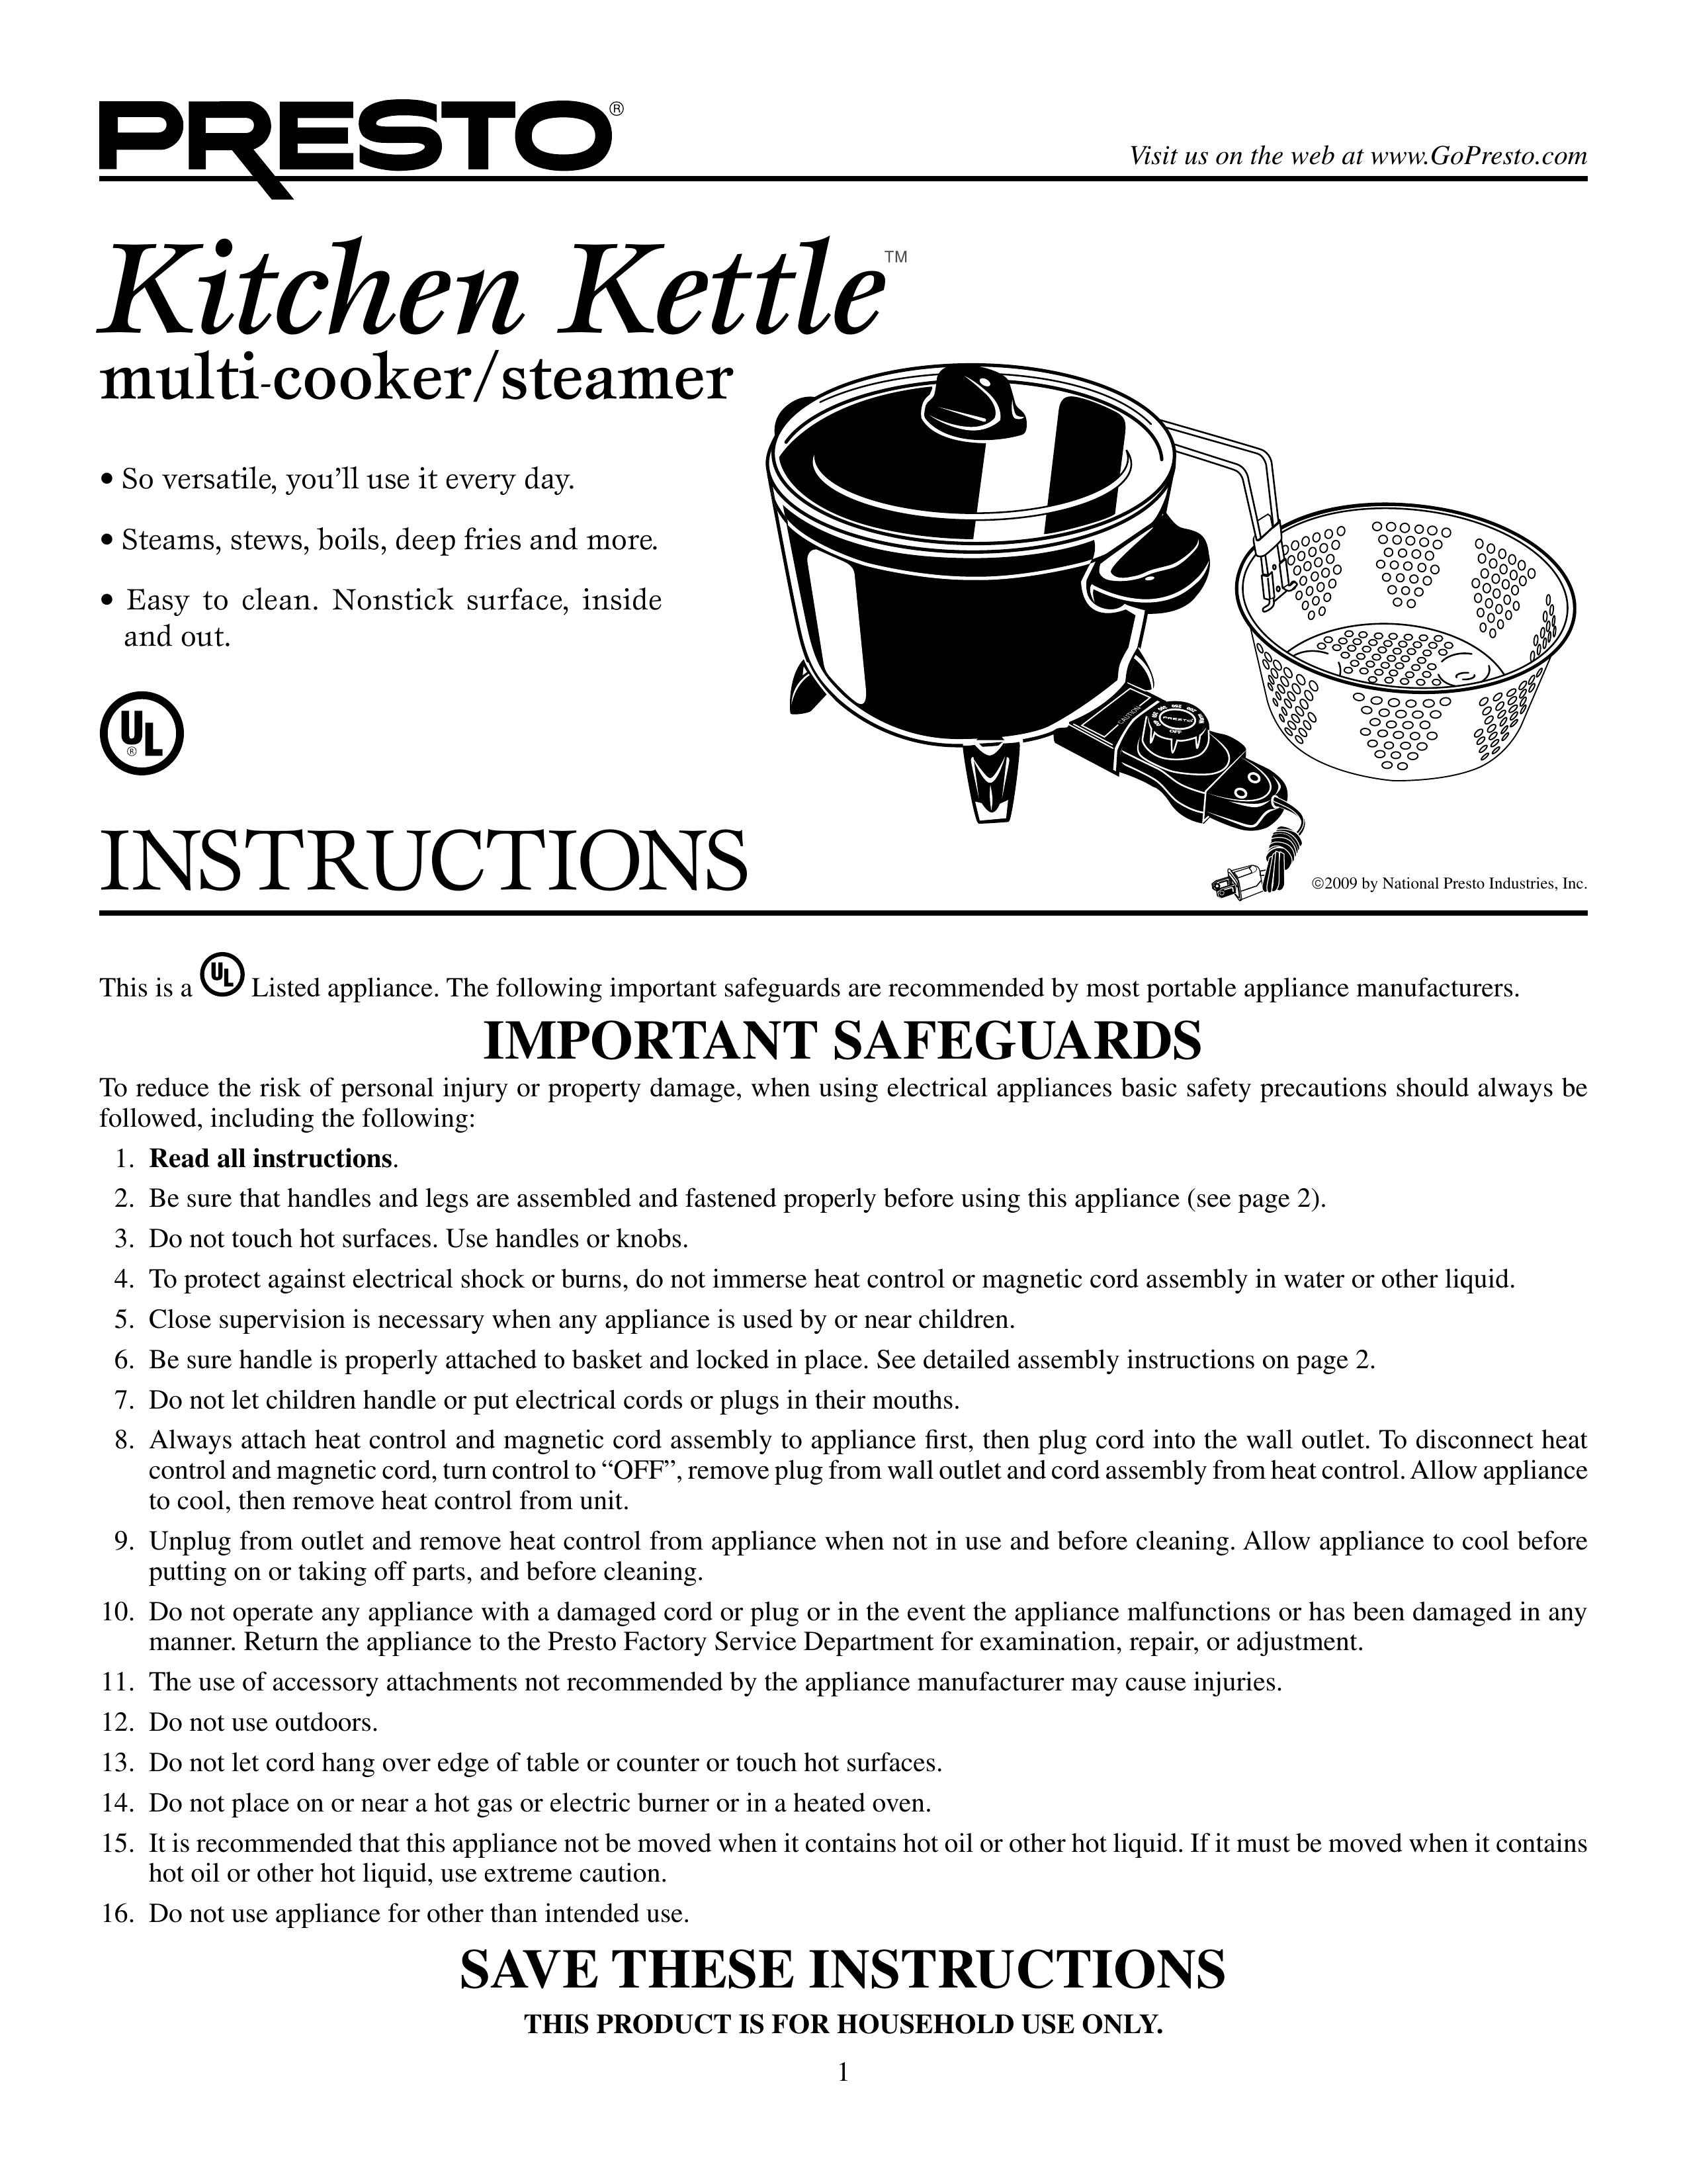 Presto 6006 Slow Cooker User Manual